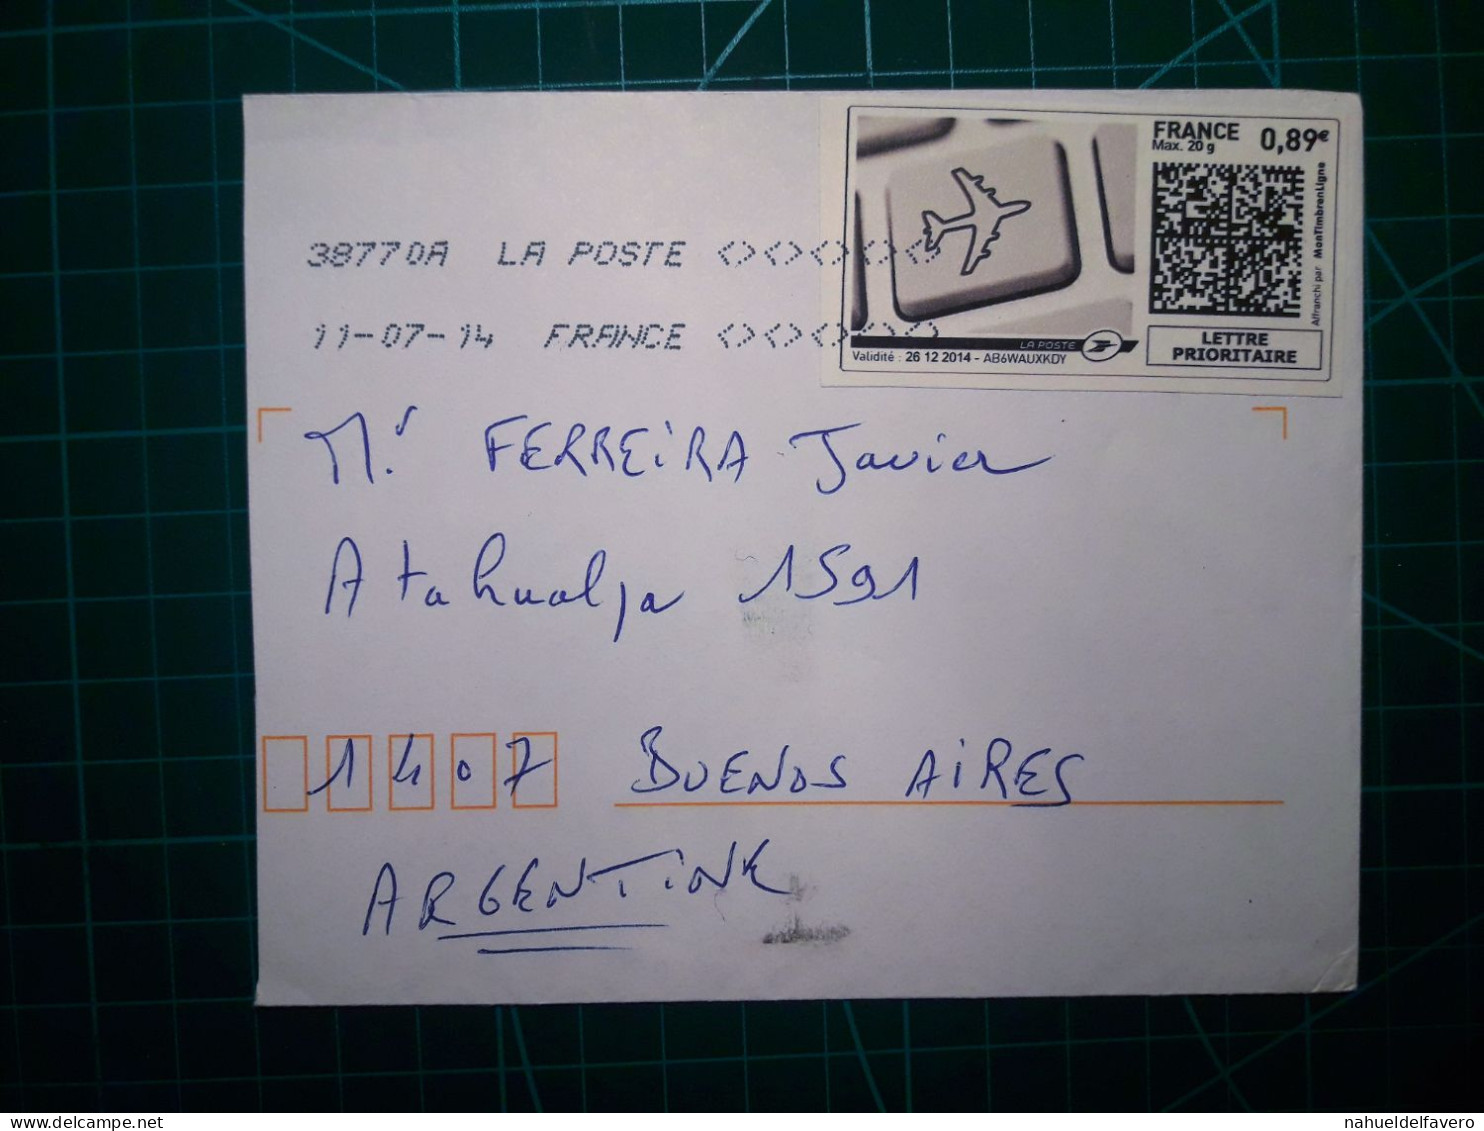 FRANCE, Enveloppe Envoyée à Buenos Aires, Argentine Avec Cachet Numérique Et Code QR. Année 2007. - Usados